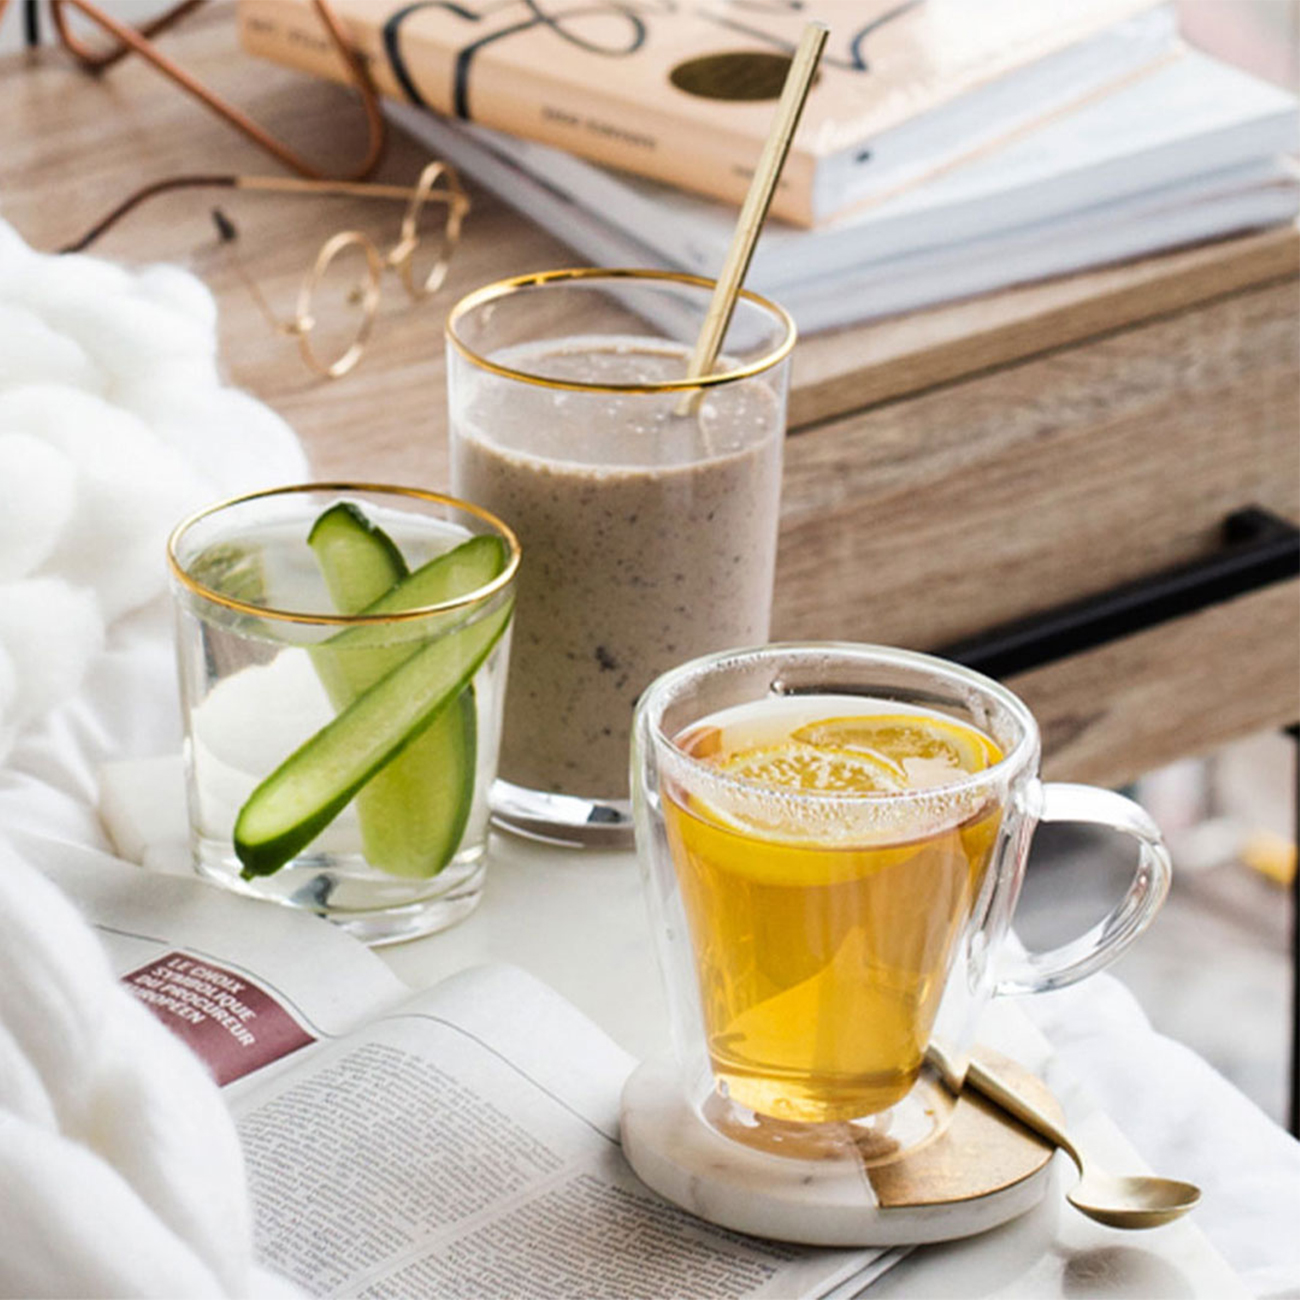 herbalife nutrition healthy breakfast in bed formula 1 shake herbal tea and aloe vera drink